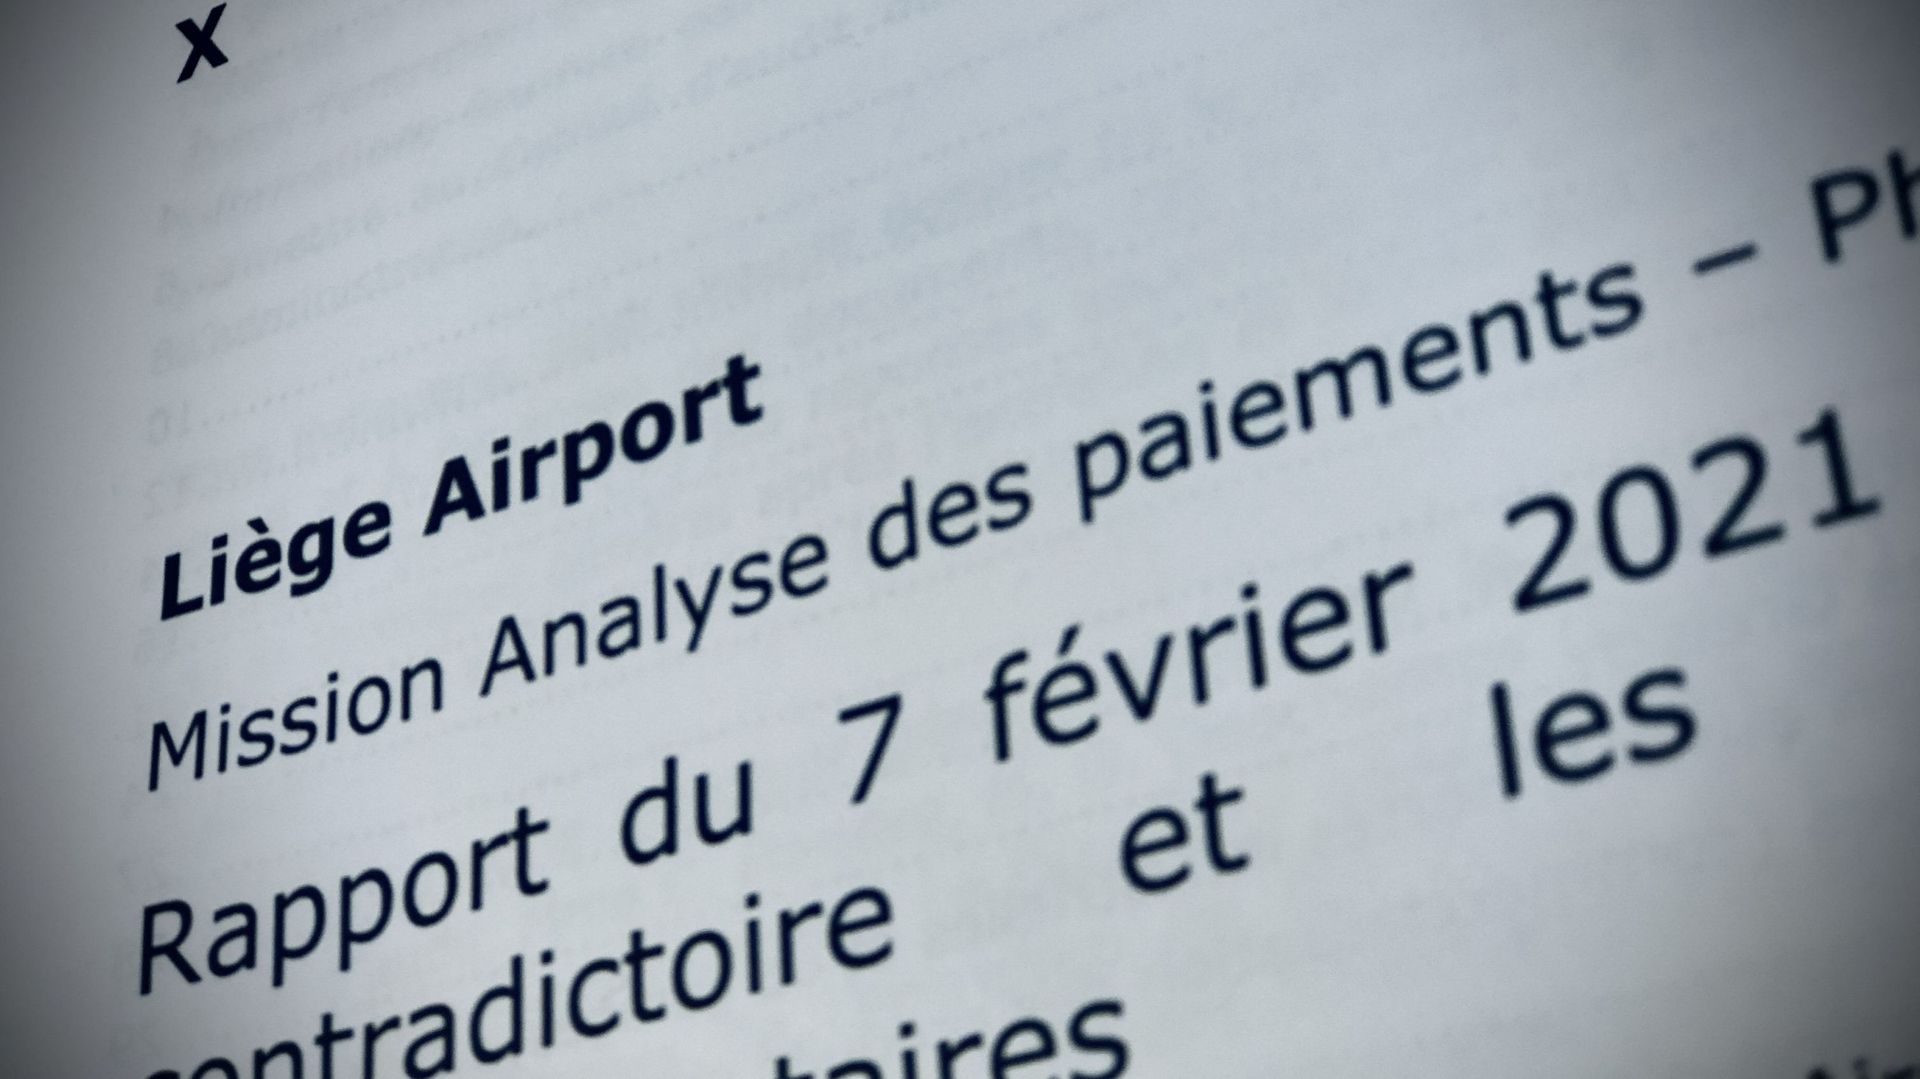 Le rapport Deloitte qui a fait trembler l'aéroport de Liège